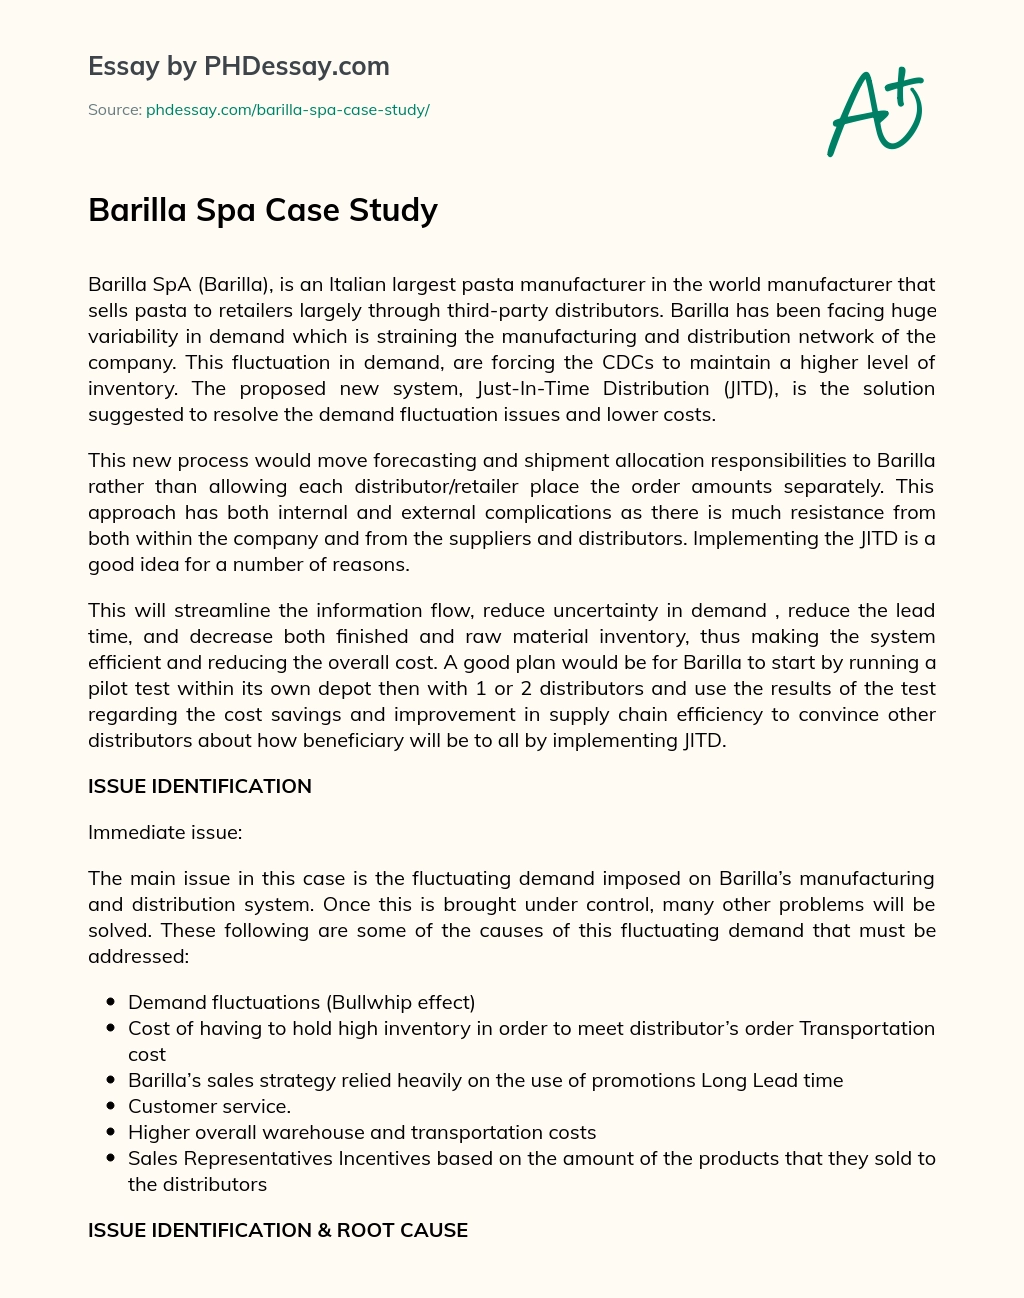 barilla spa case study questions